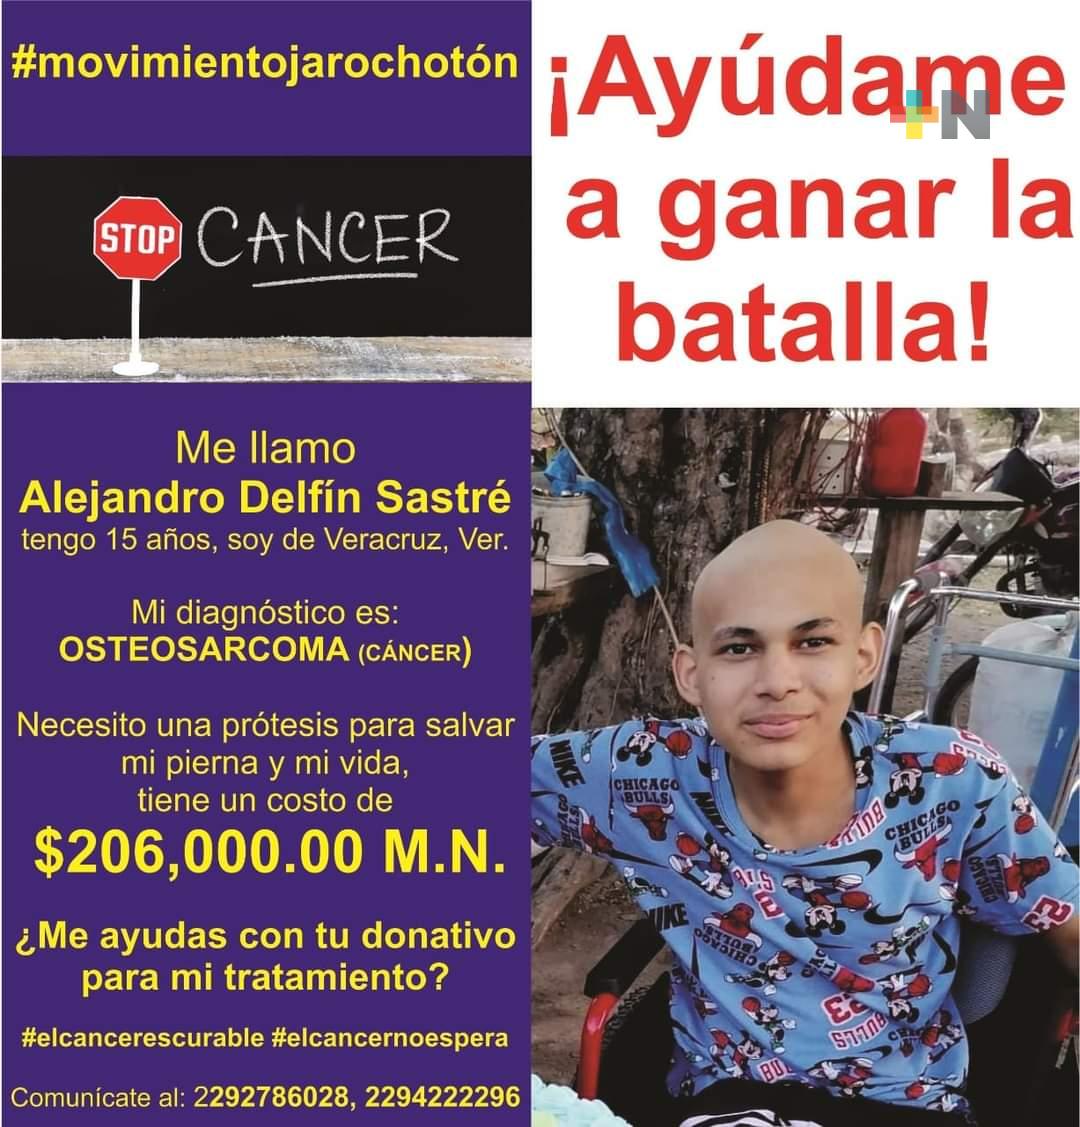 Solicitan apoyo para el tratamiento de Alejandro, menor de 15 años con cáncer óseo